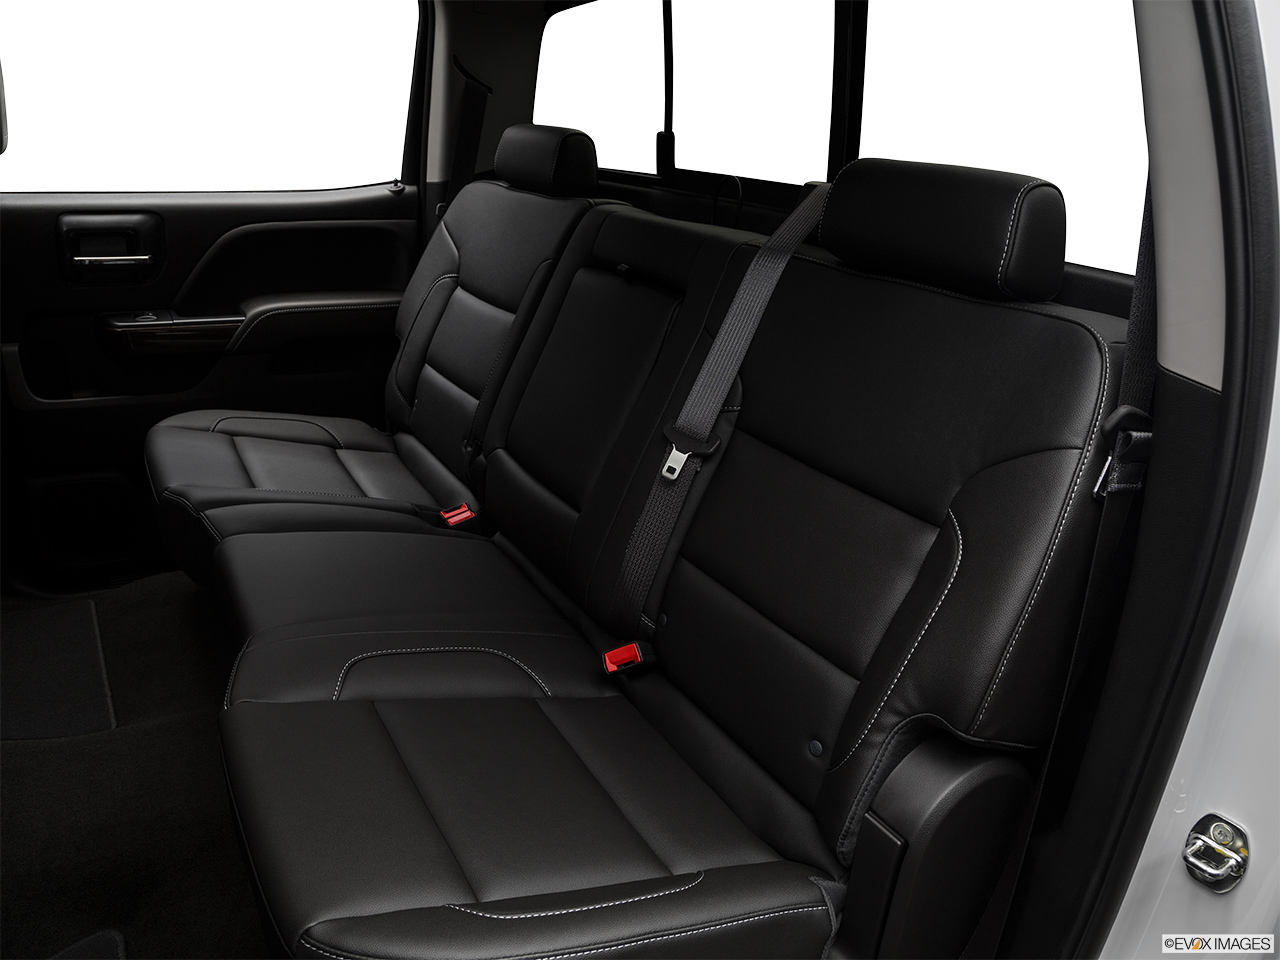 2019 GMC Sierra 2500HD SLT Rear seats from Drivers Side. 